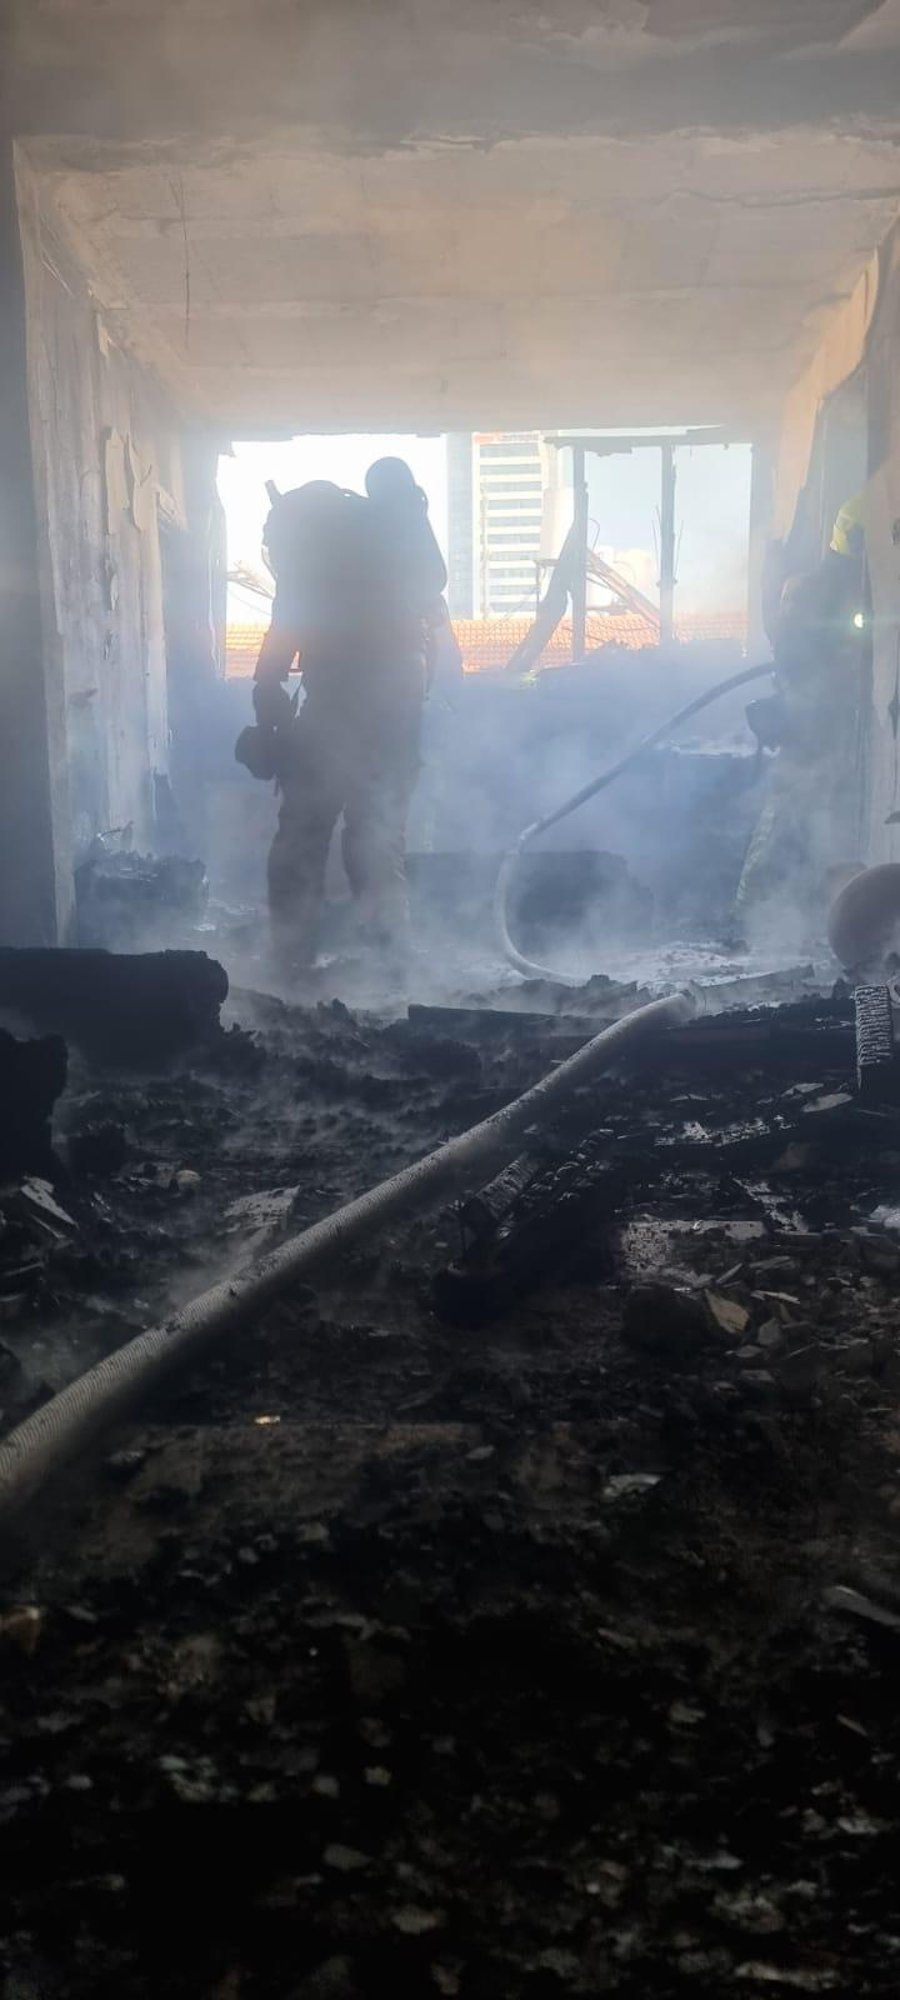 שריפה פרצה בדירה בבני ברק; נזק רב נגרם לרכוש